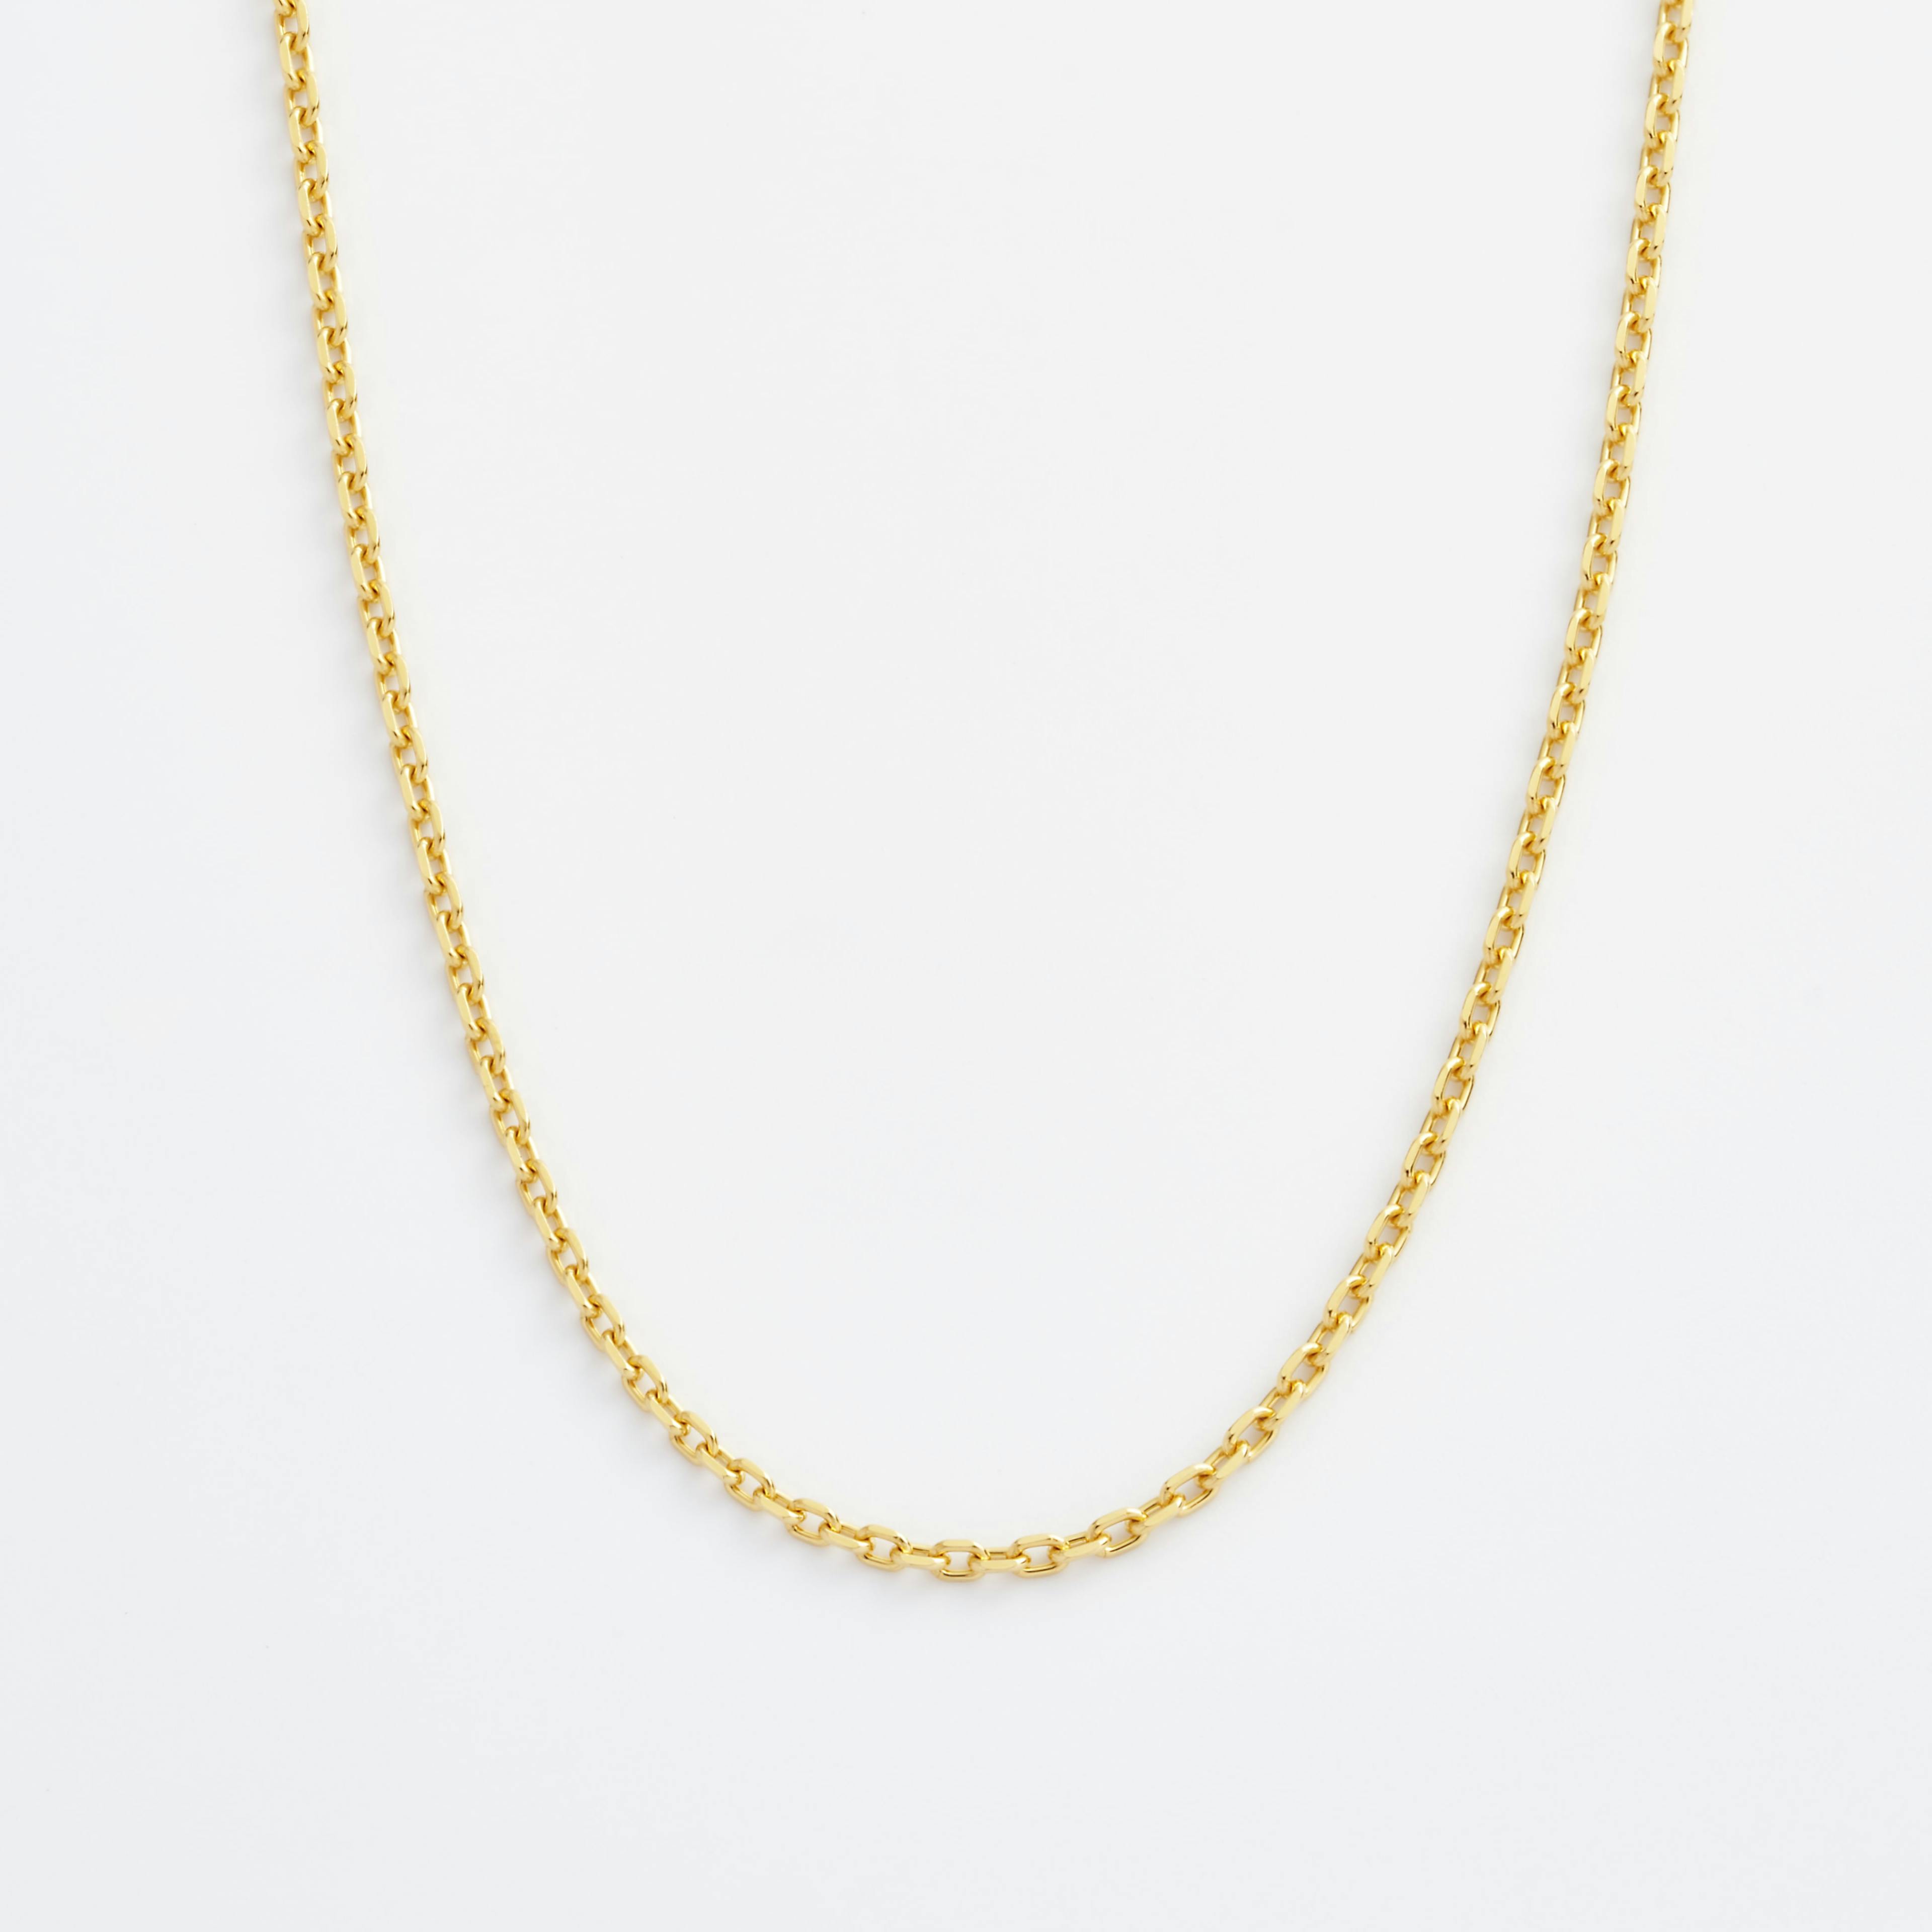 Shop gold Necklaces Wide Diamond Cut Cable Chain Necklace